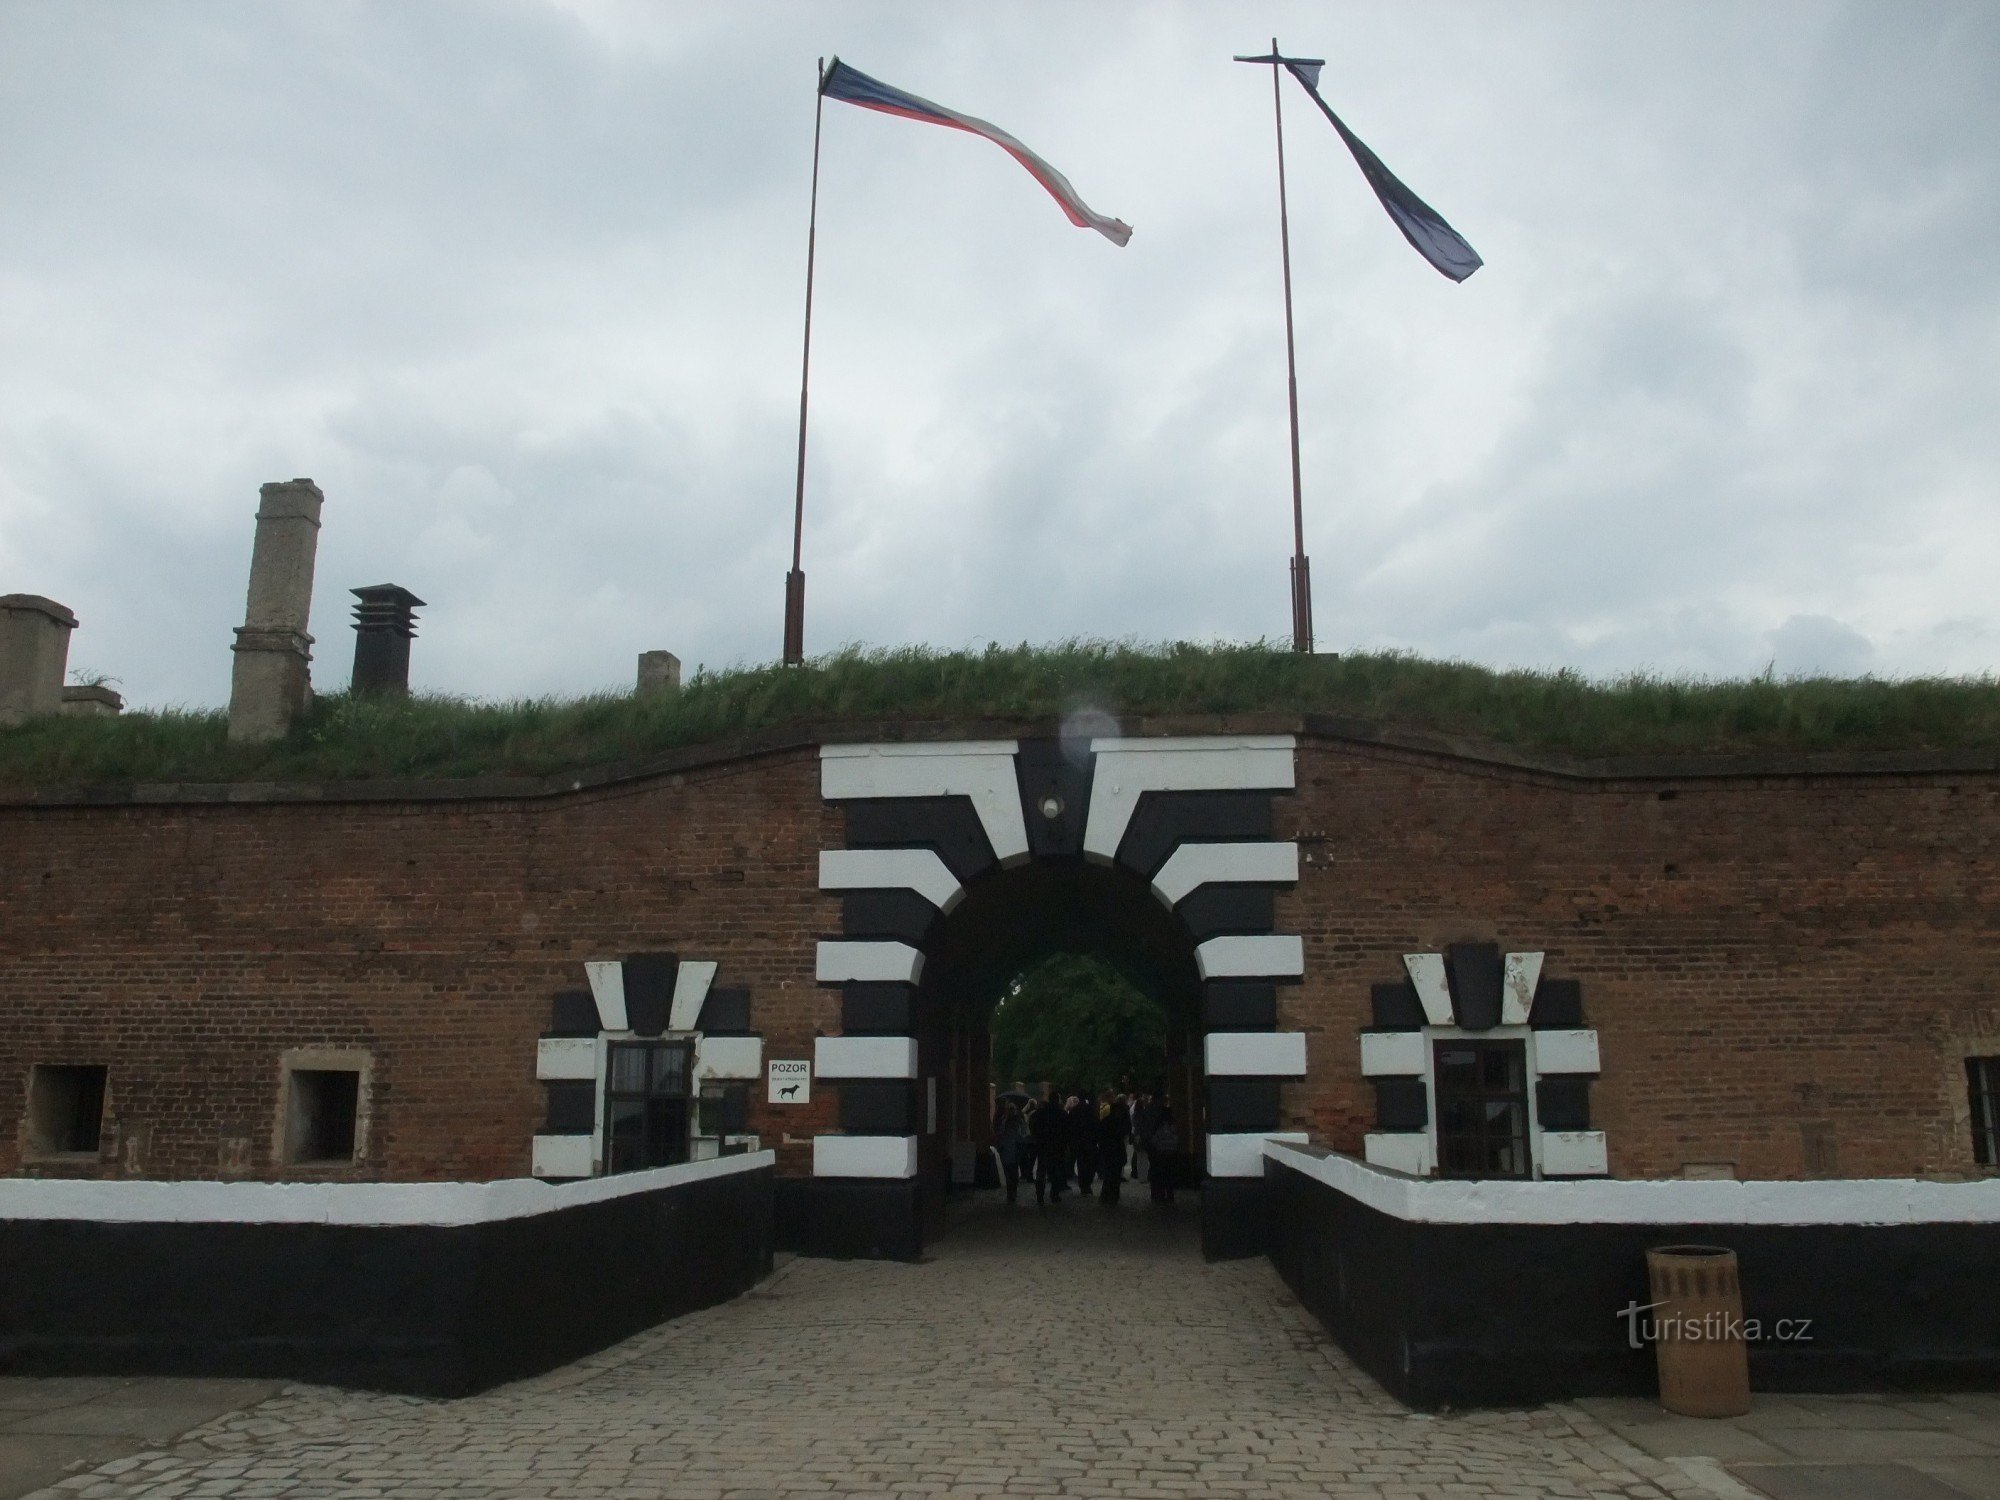 Μικρό φρούριο στο Terezín